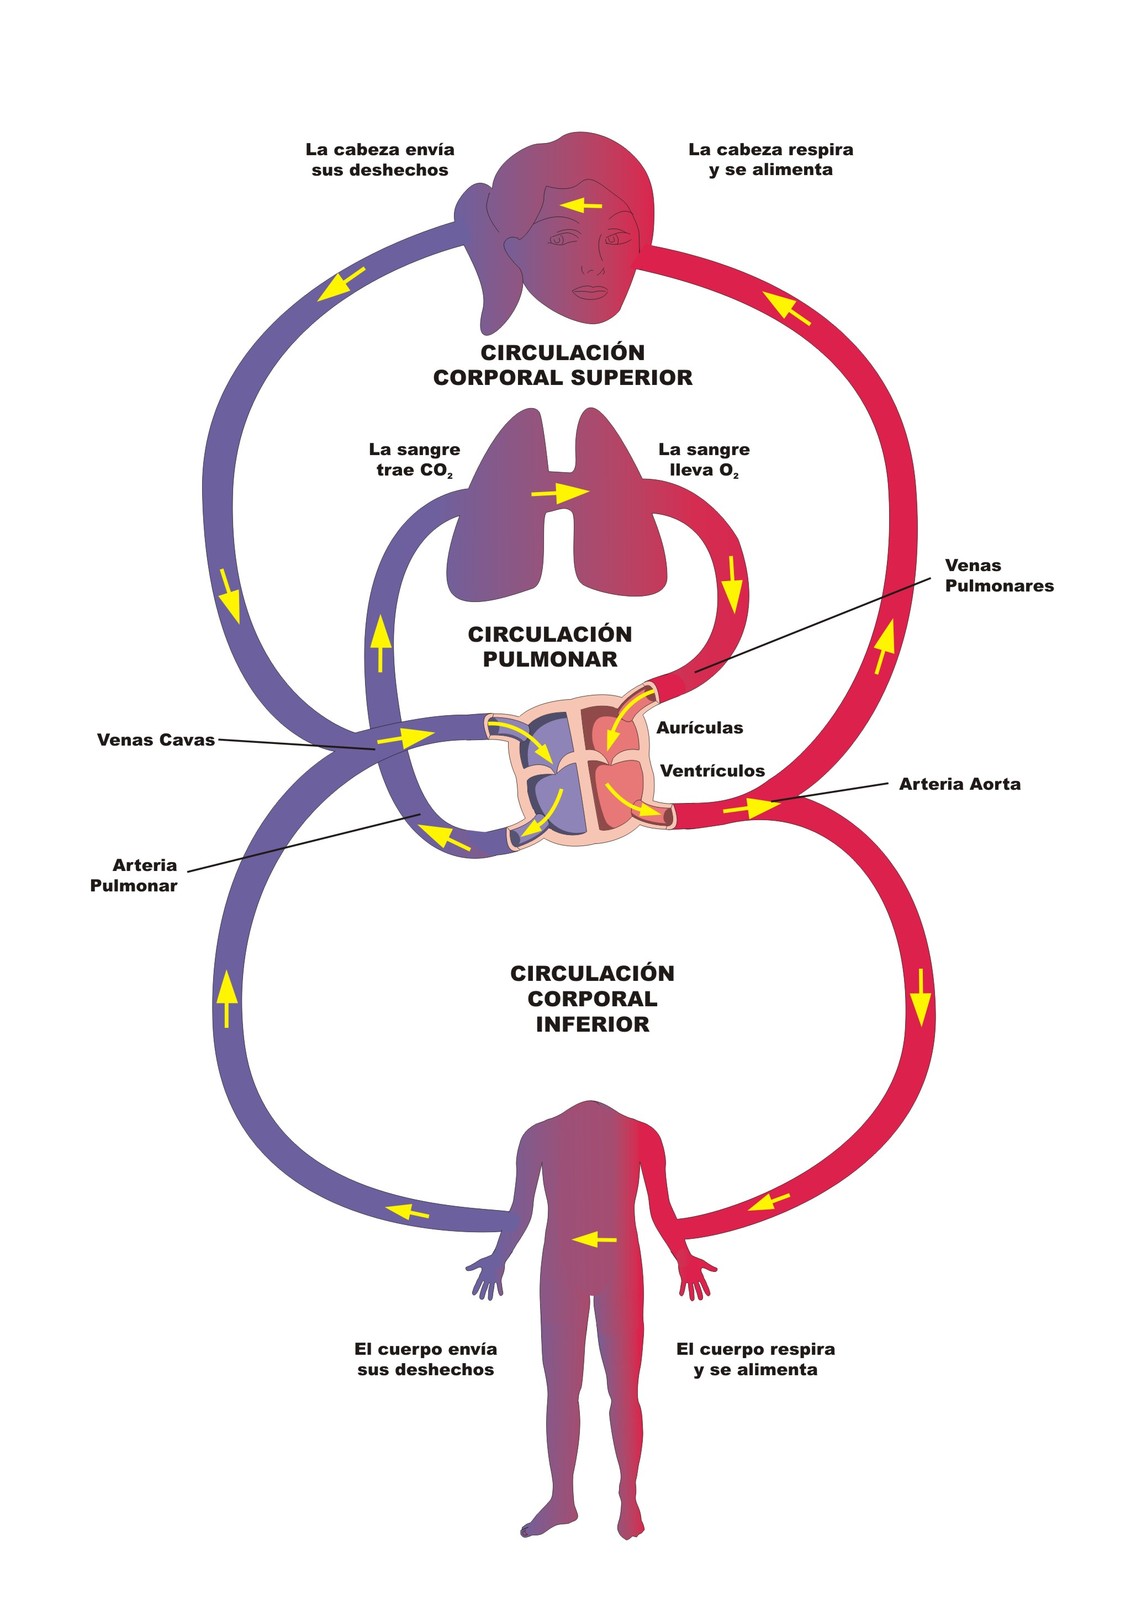 El secreto no expuesto de Hipertensión pulmonar